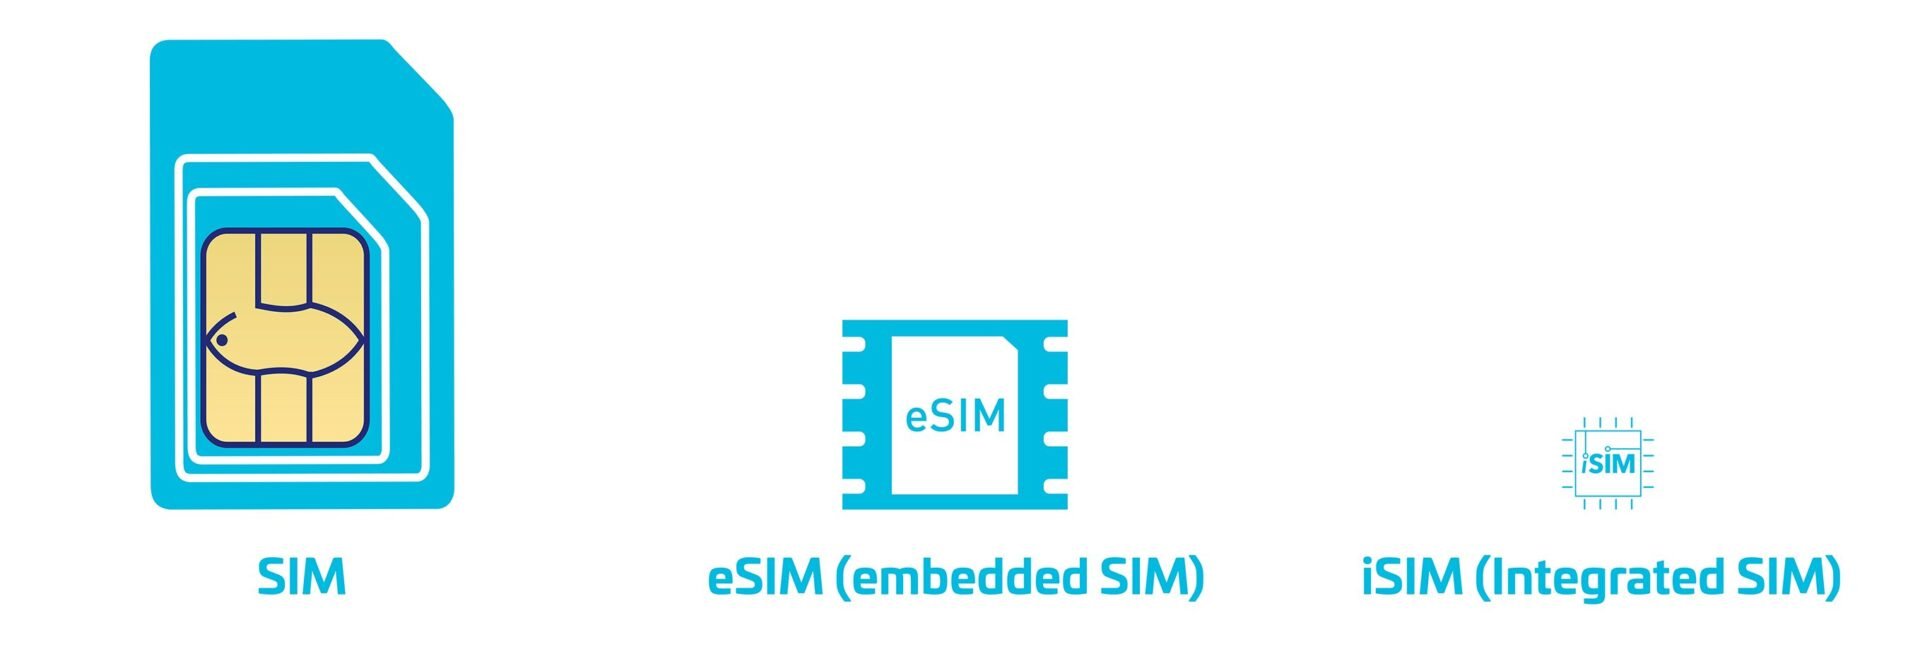 L'eSIM est 60 fois plus petite qu'une nanoSIM.